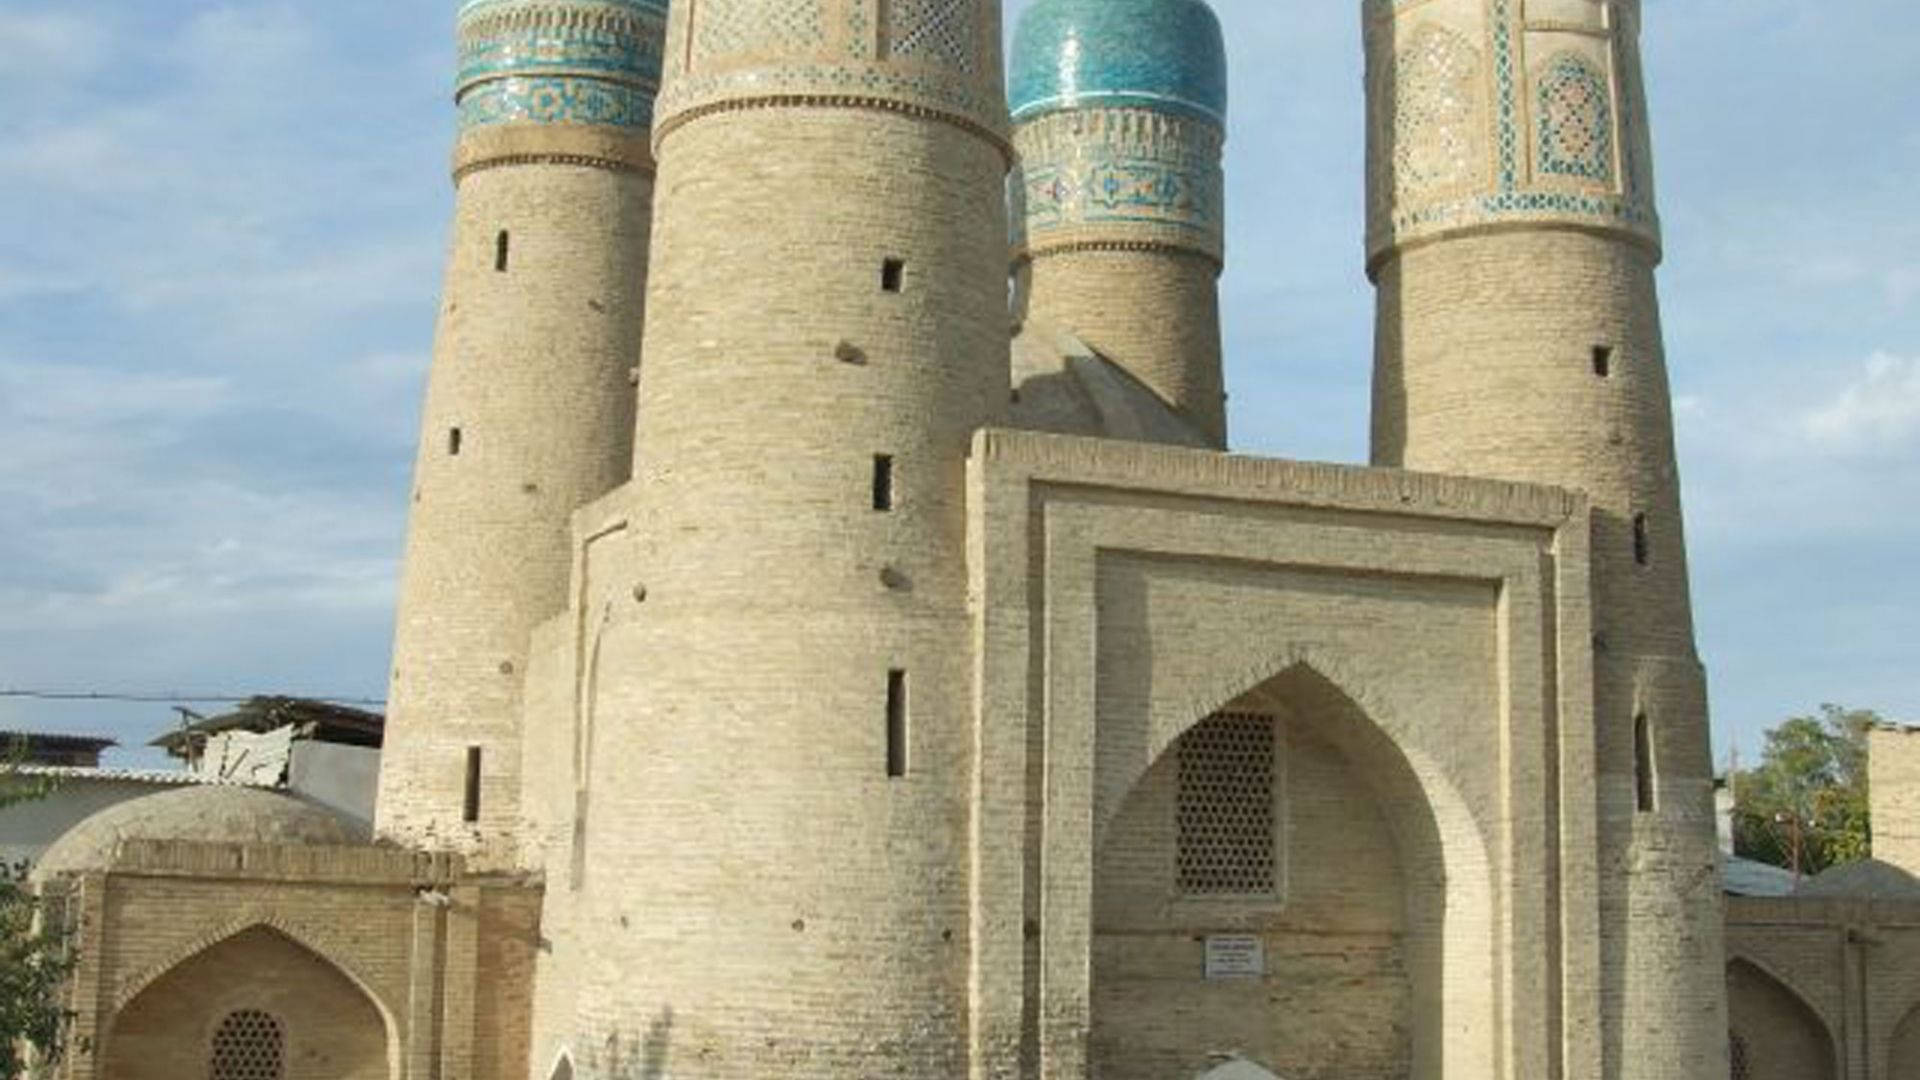 Uzbekistan Chor Minor Madrassah Gatehouse Background